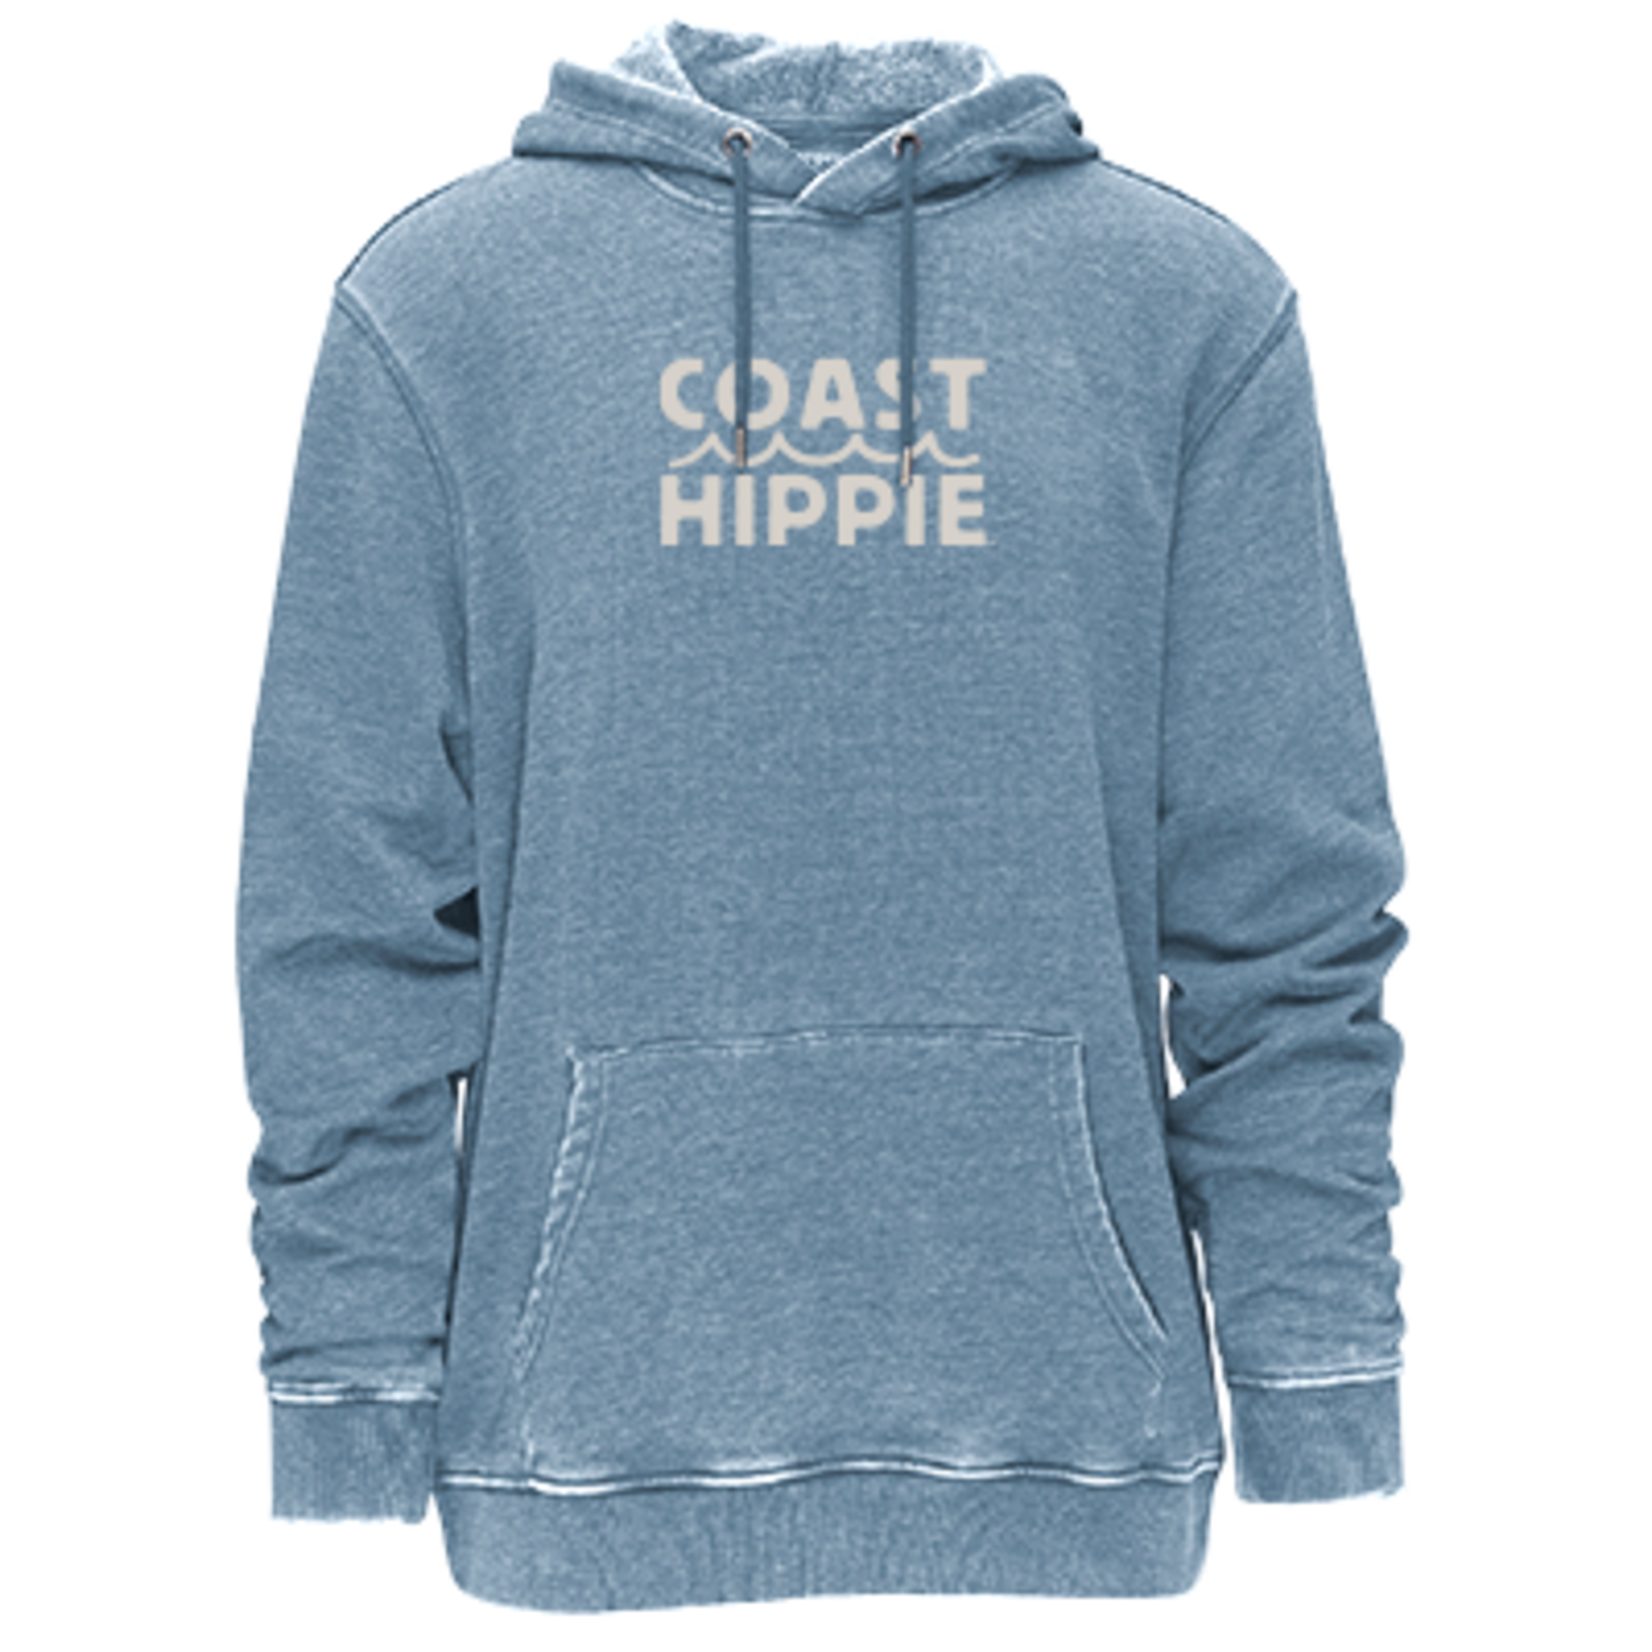 Coast Hippie Coast Hippie Logo Vintage Hoodie Light Denim